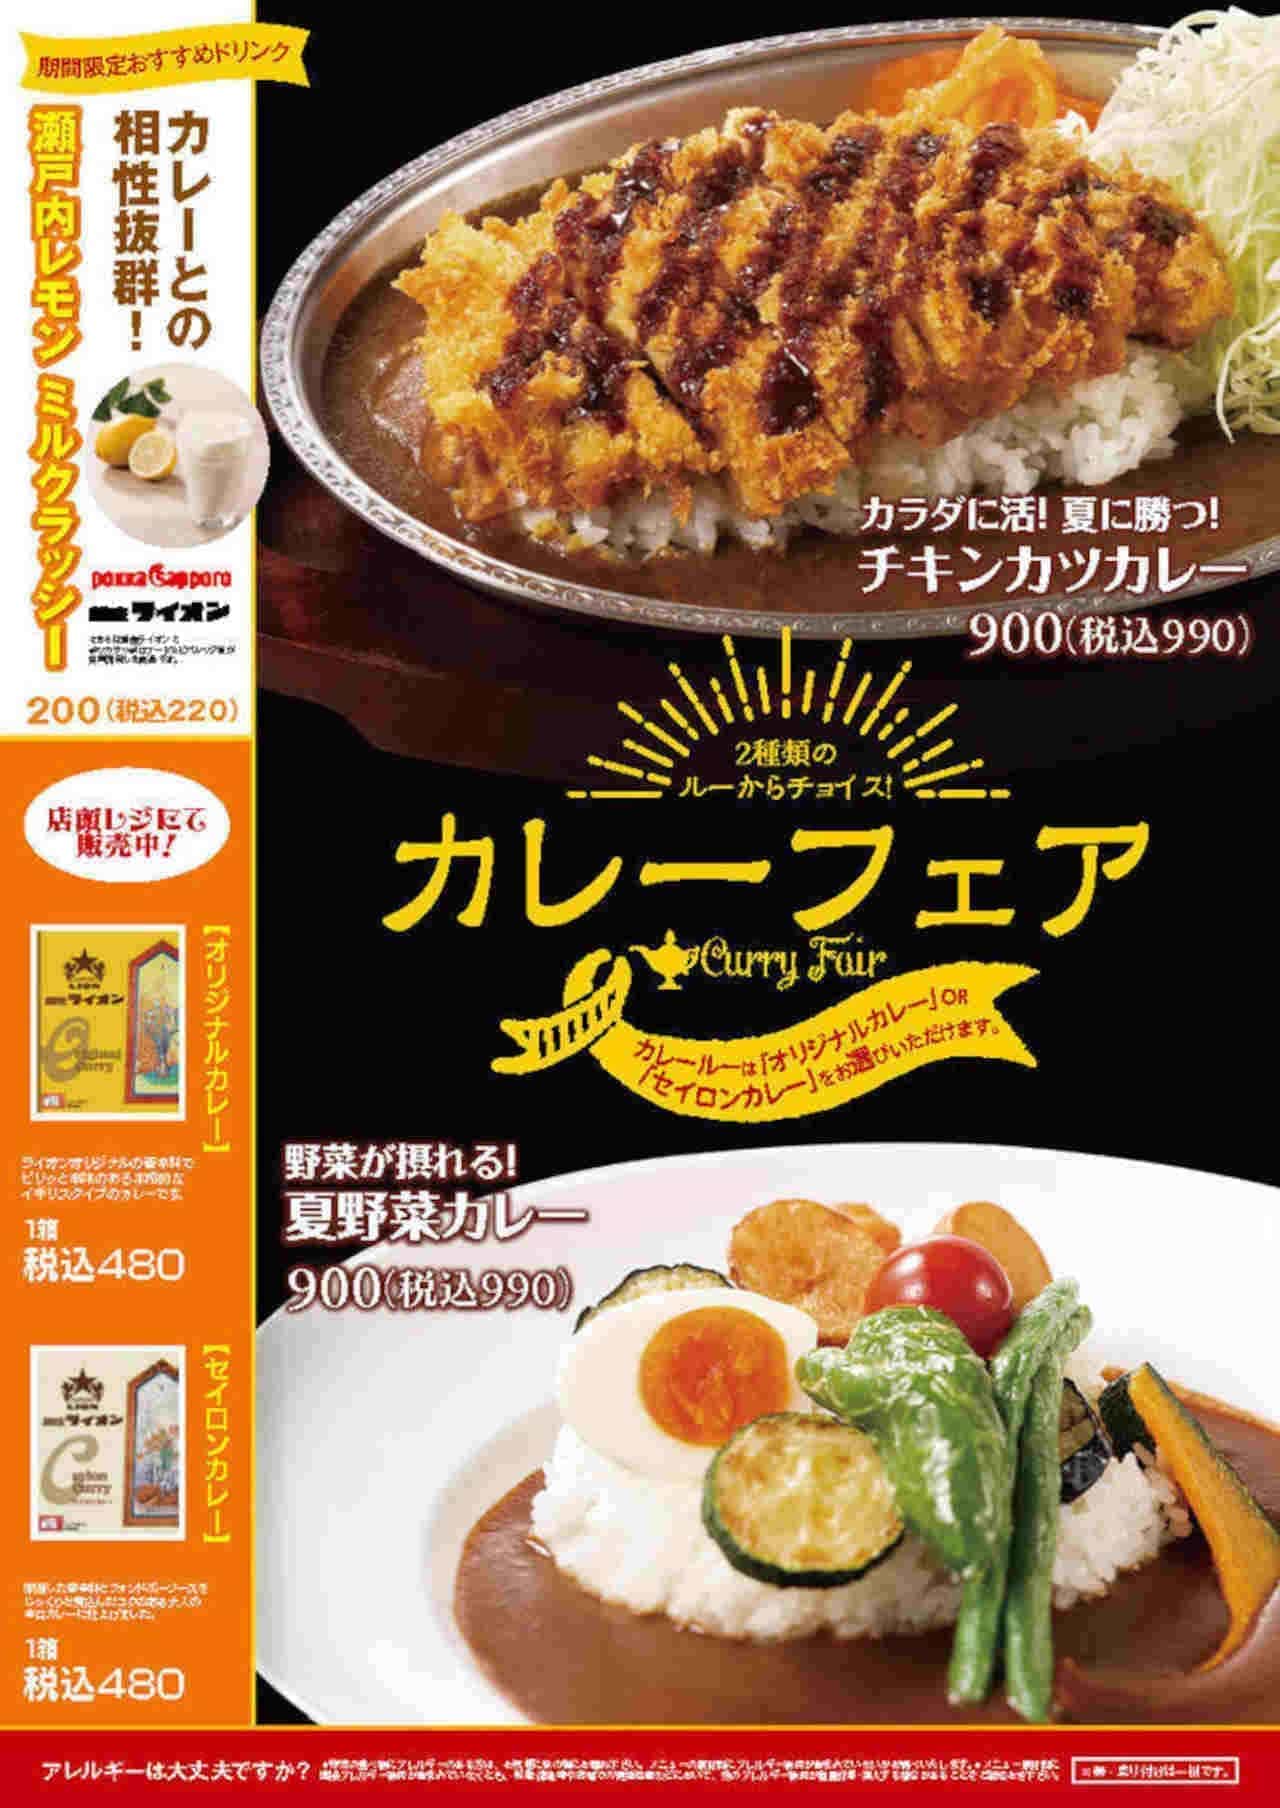 Ginza Lion "Curry-Fair"